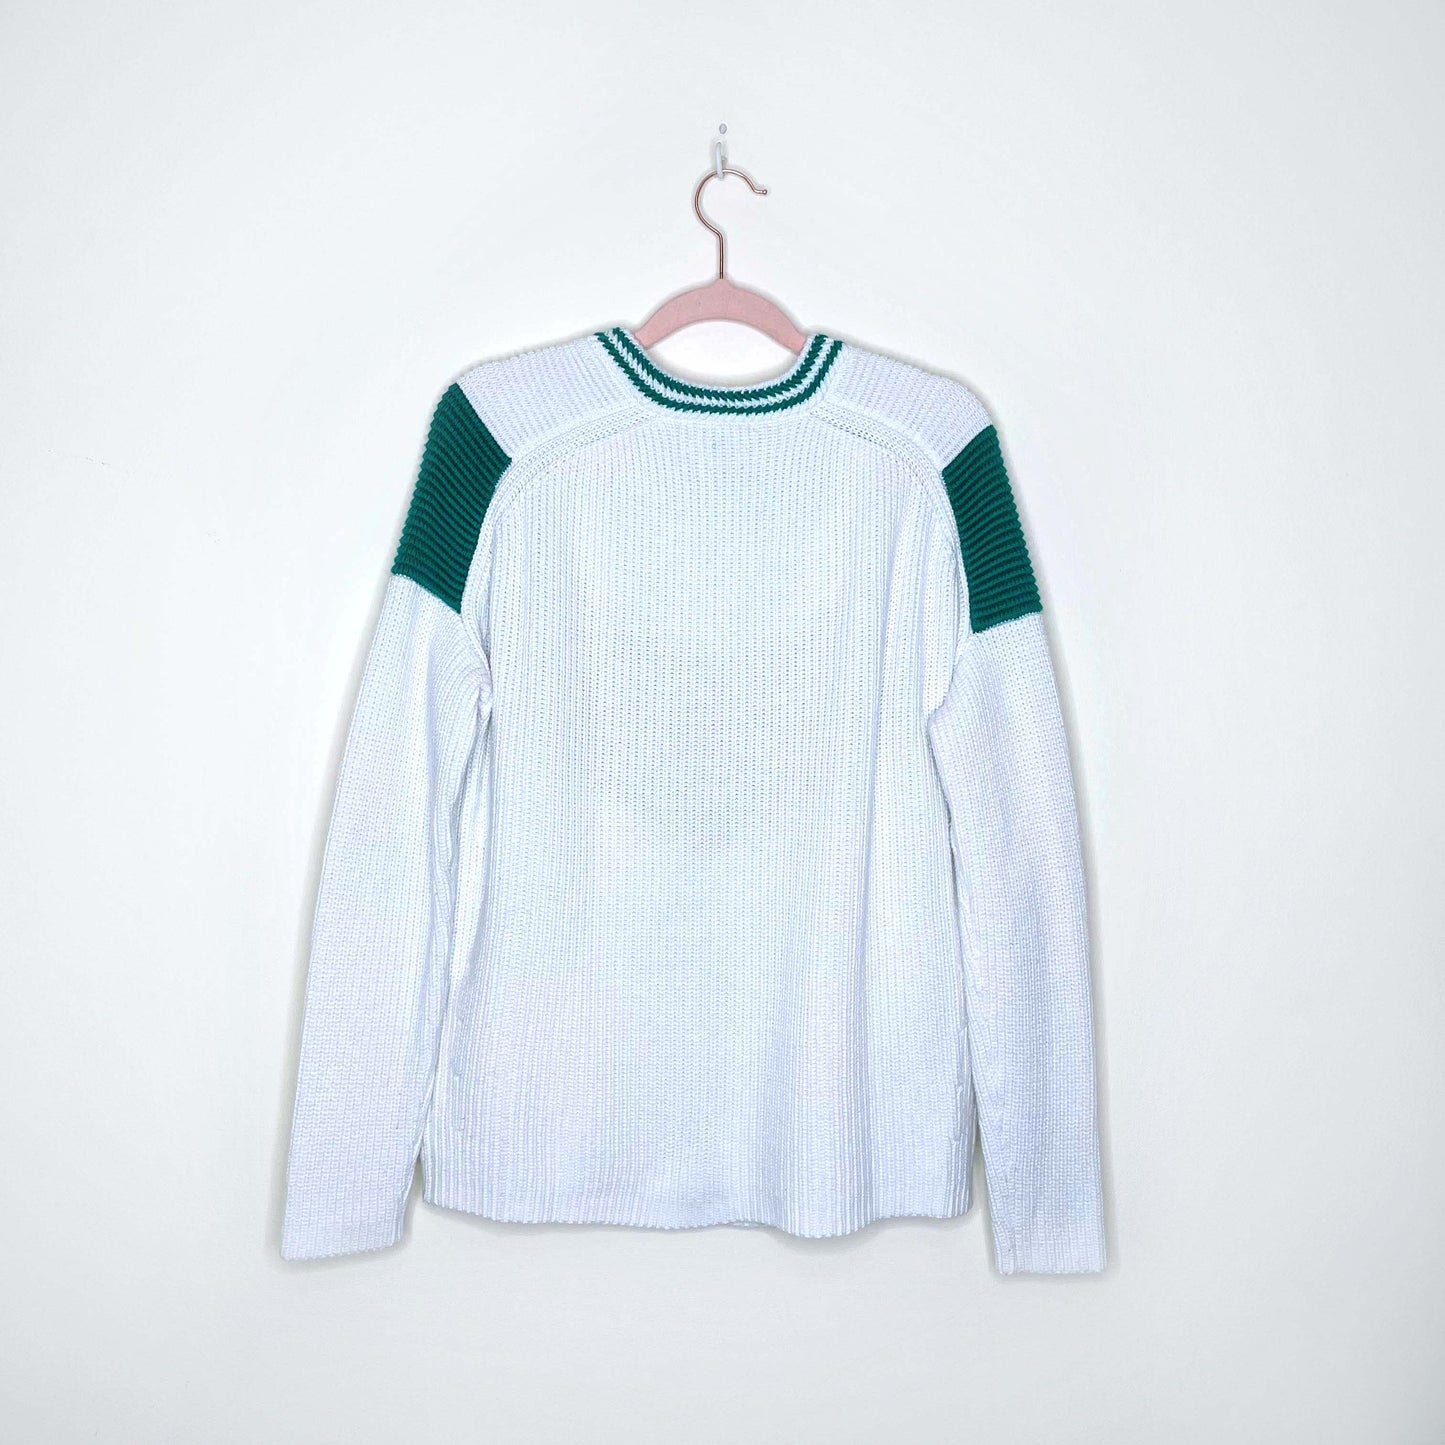 maje marina chevron cotton-wool knit sweater - size 2